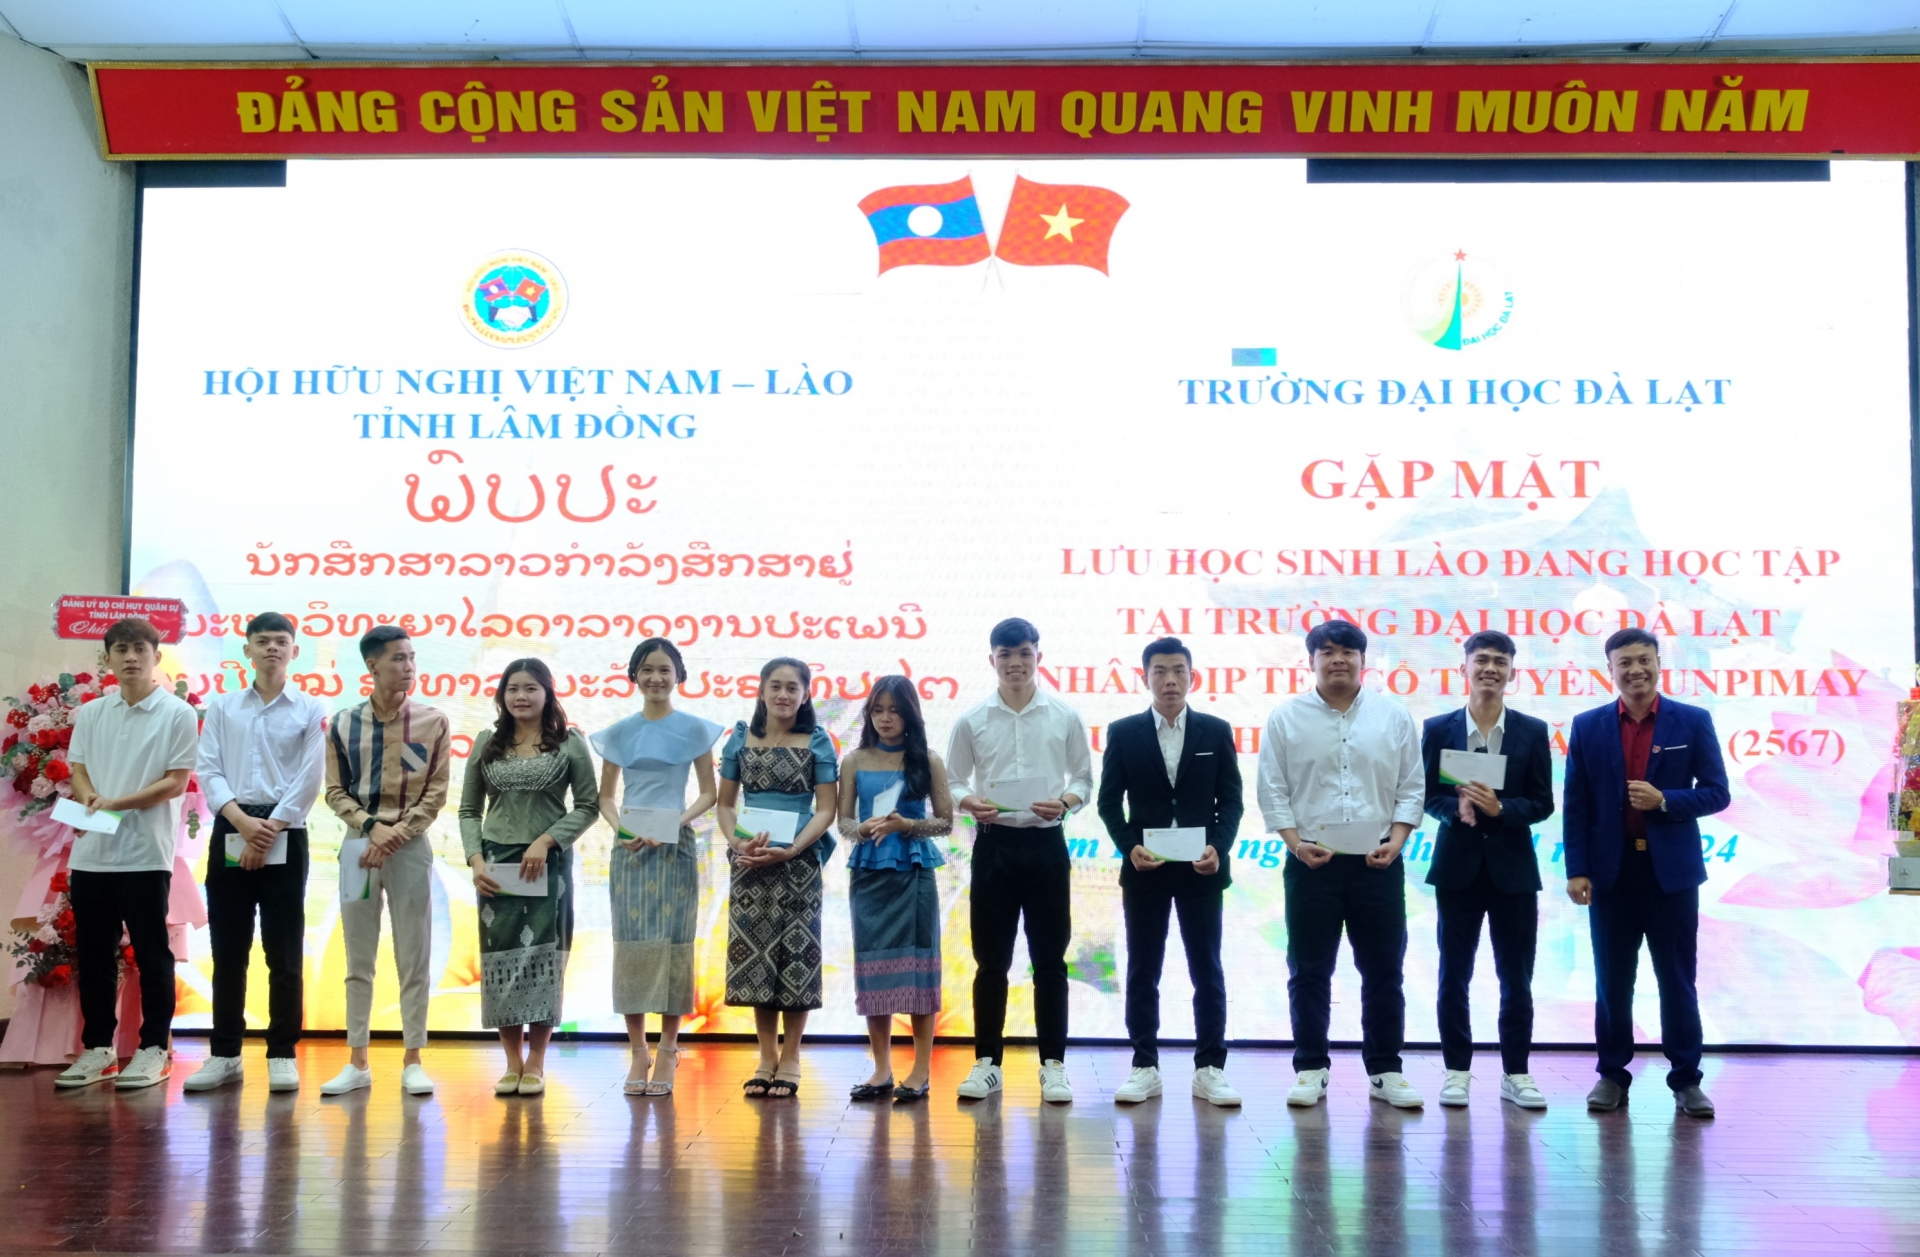 Trao quà của Đảng ủy - Ban Giám hiệu Trường Đại học Đà Lạt cho các lưu học sinh Lào